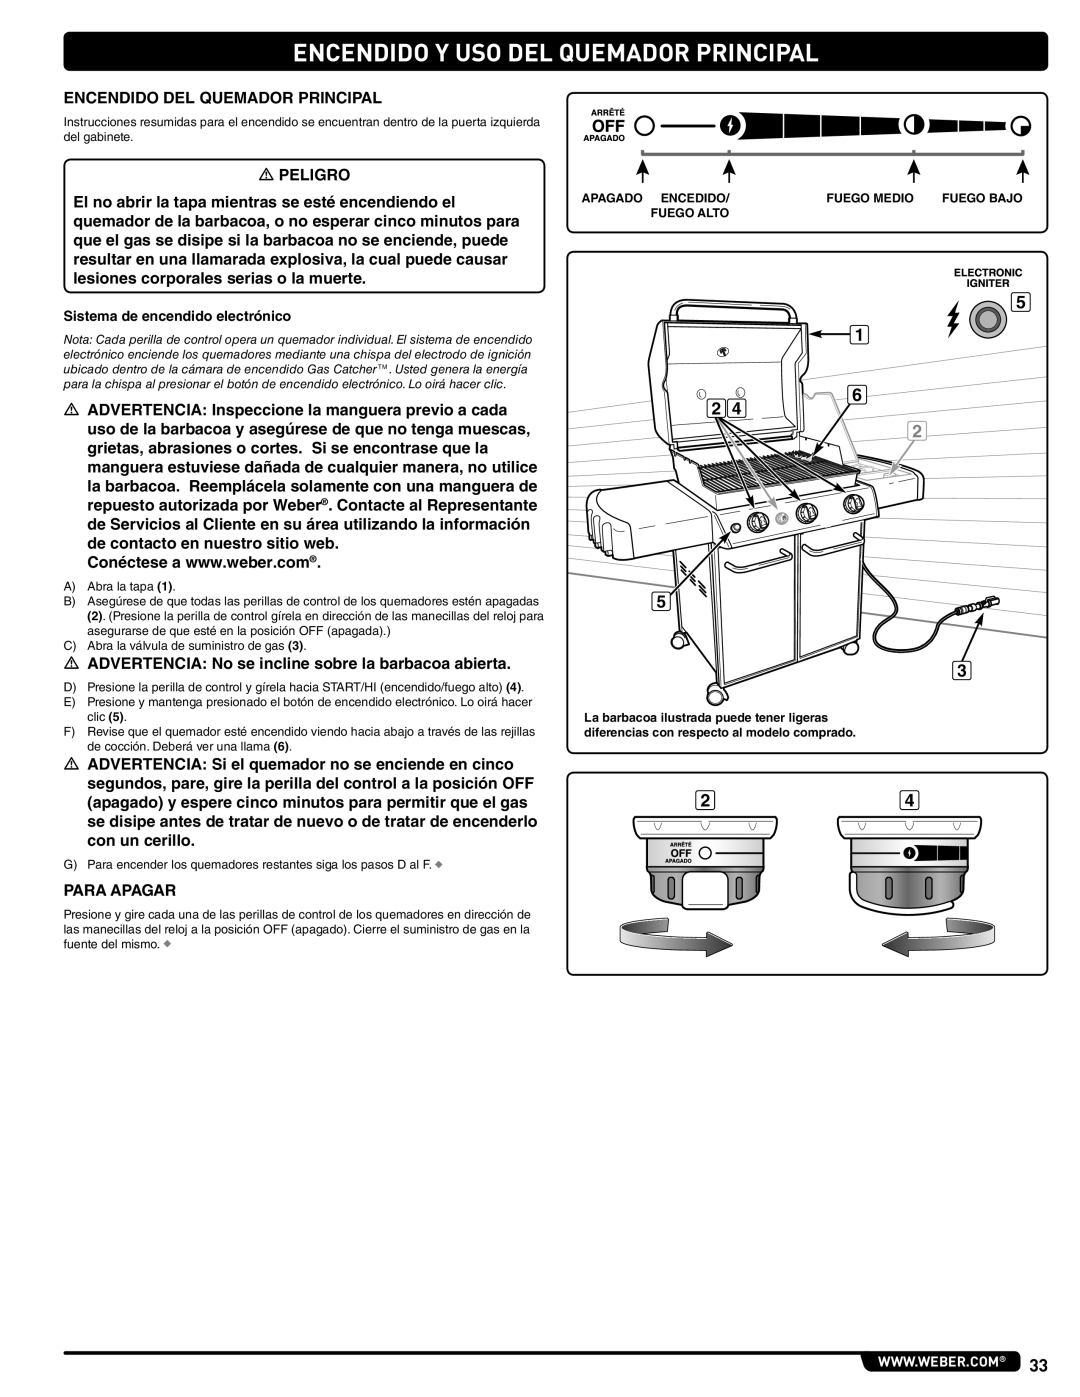 Weber 56515 manual Encendido Y Uso Del Quemador Principal, Sistema de encendido electrónico 